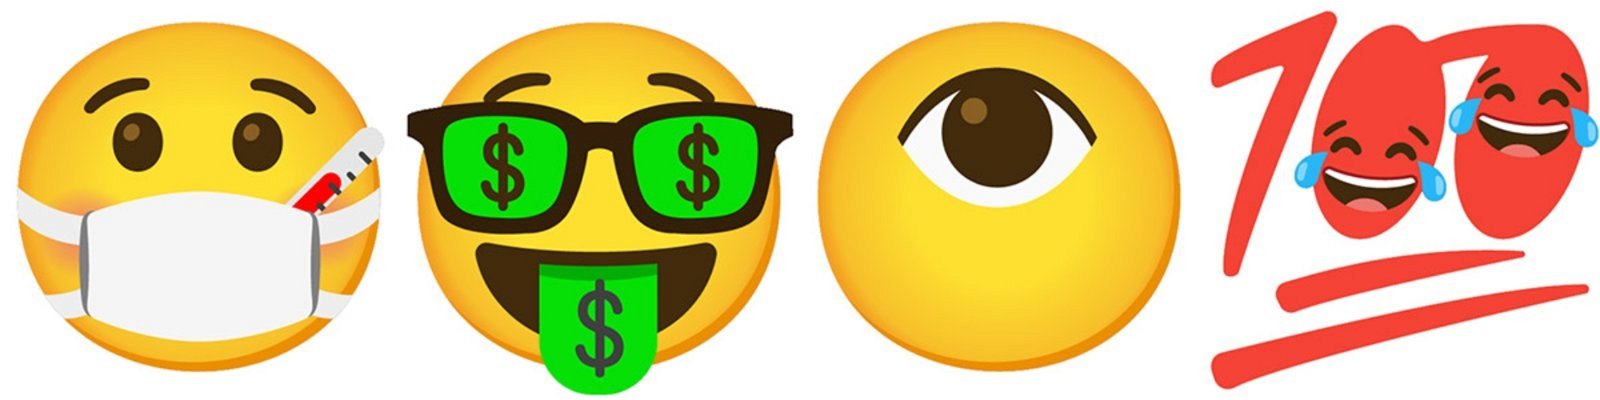 emojis combinados para obtener diferentes caras 3